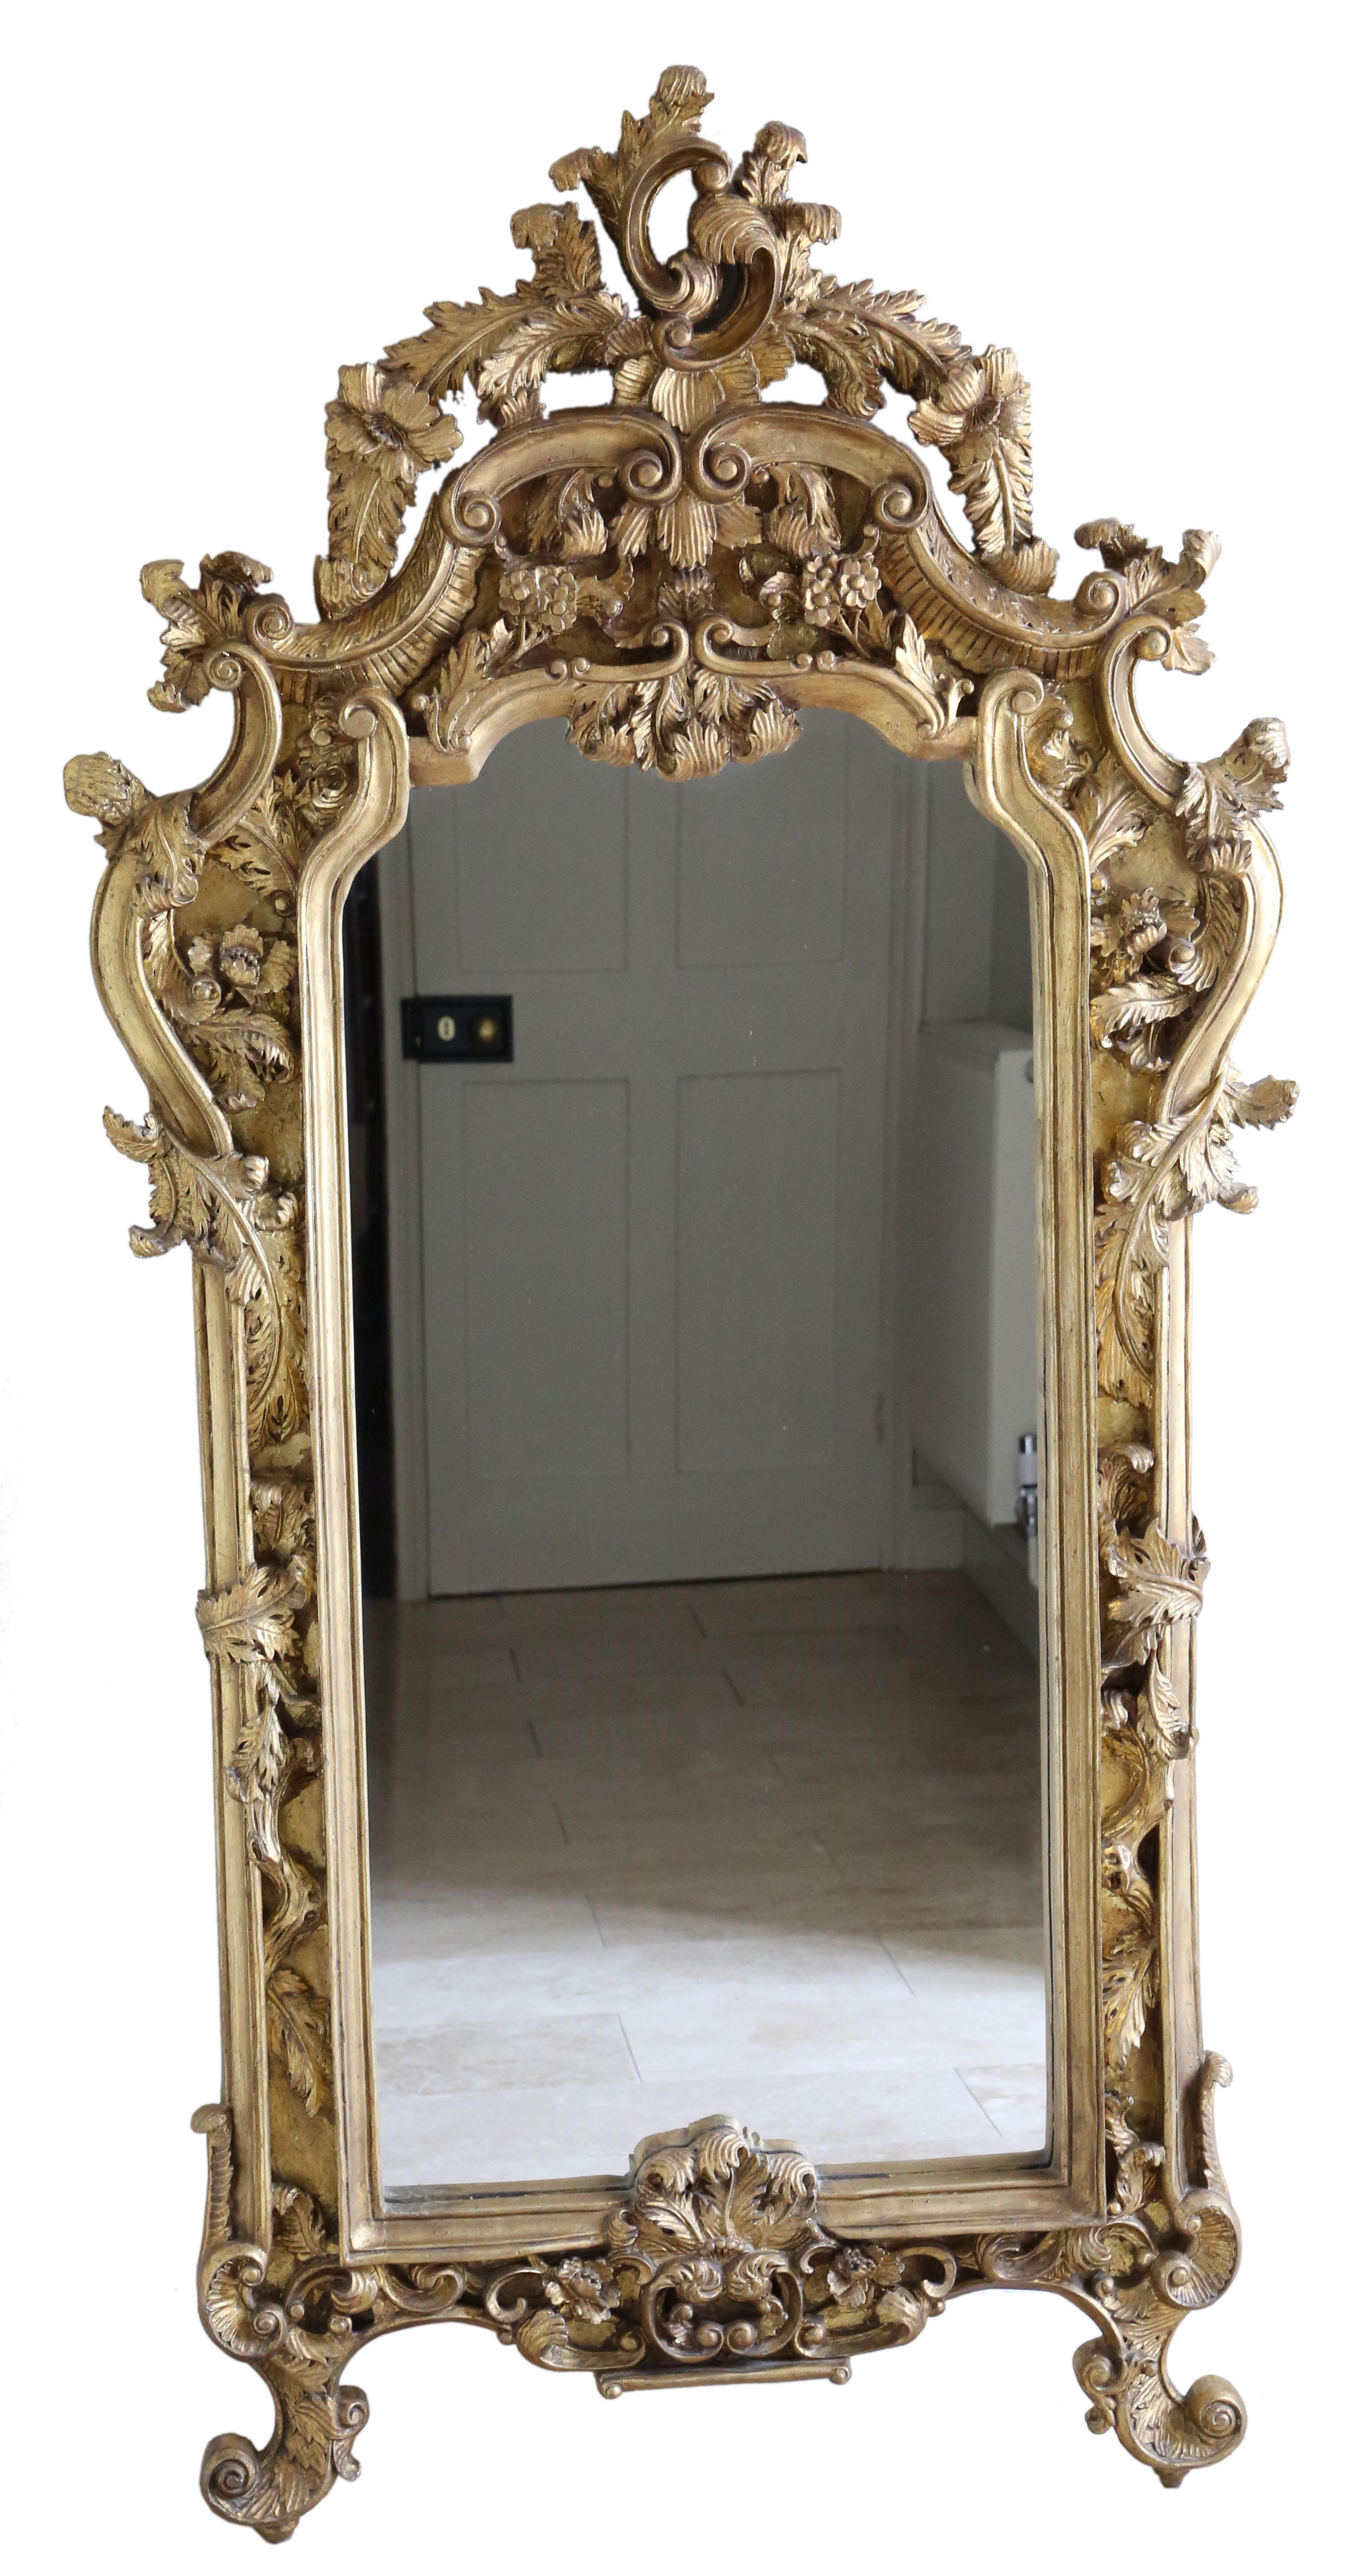 Antique Vintage très grand miroir de sol doré de belle qualité. Environ 50 ans.

Il s'agit d'une découverte rare et impressionnante, qui trouverait sa place au bon endroit. Il n'y a pas de joints lâches ni de ver à bois.

Le verre miroir d'origine